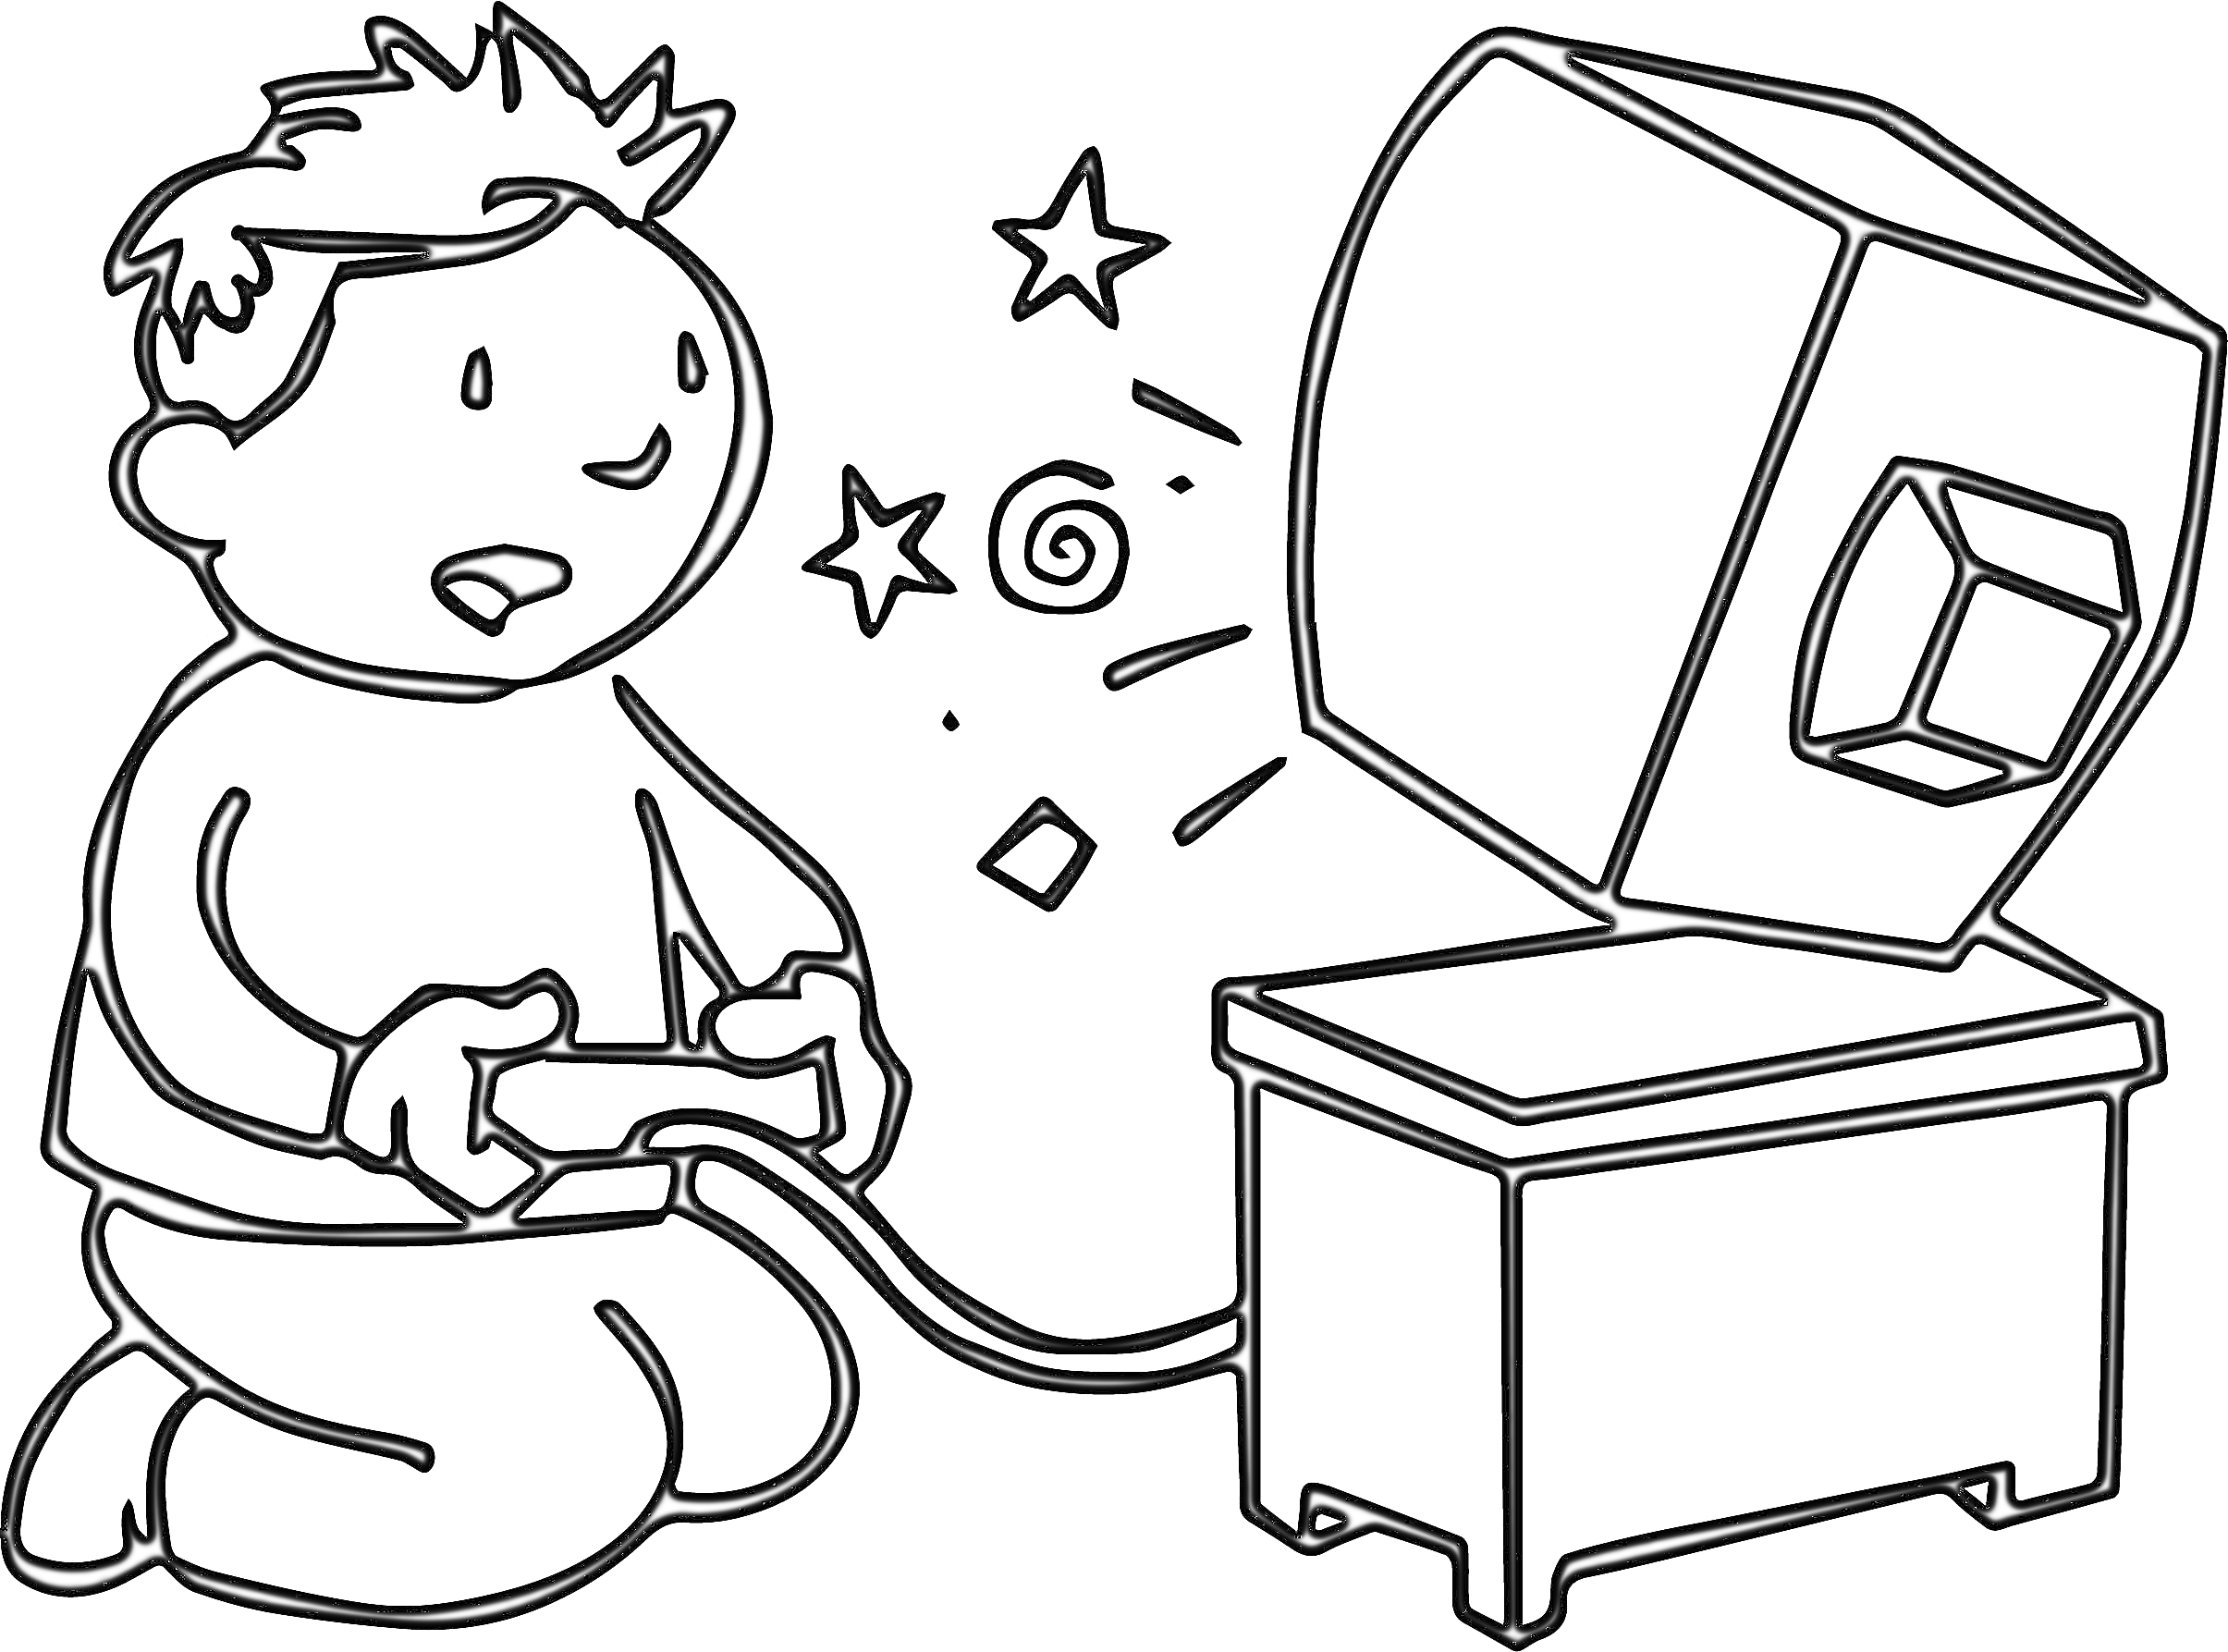 Раскраска ребенок с геймпадом перед компьютером, звезды, спираль и квадраты вокруг ребенка